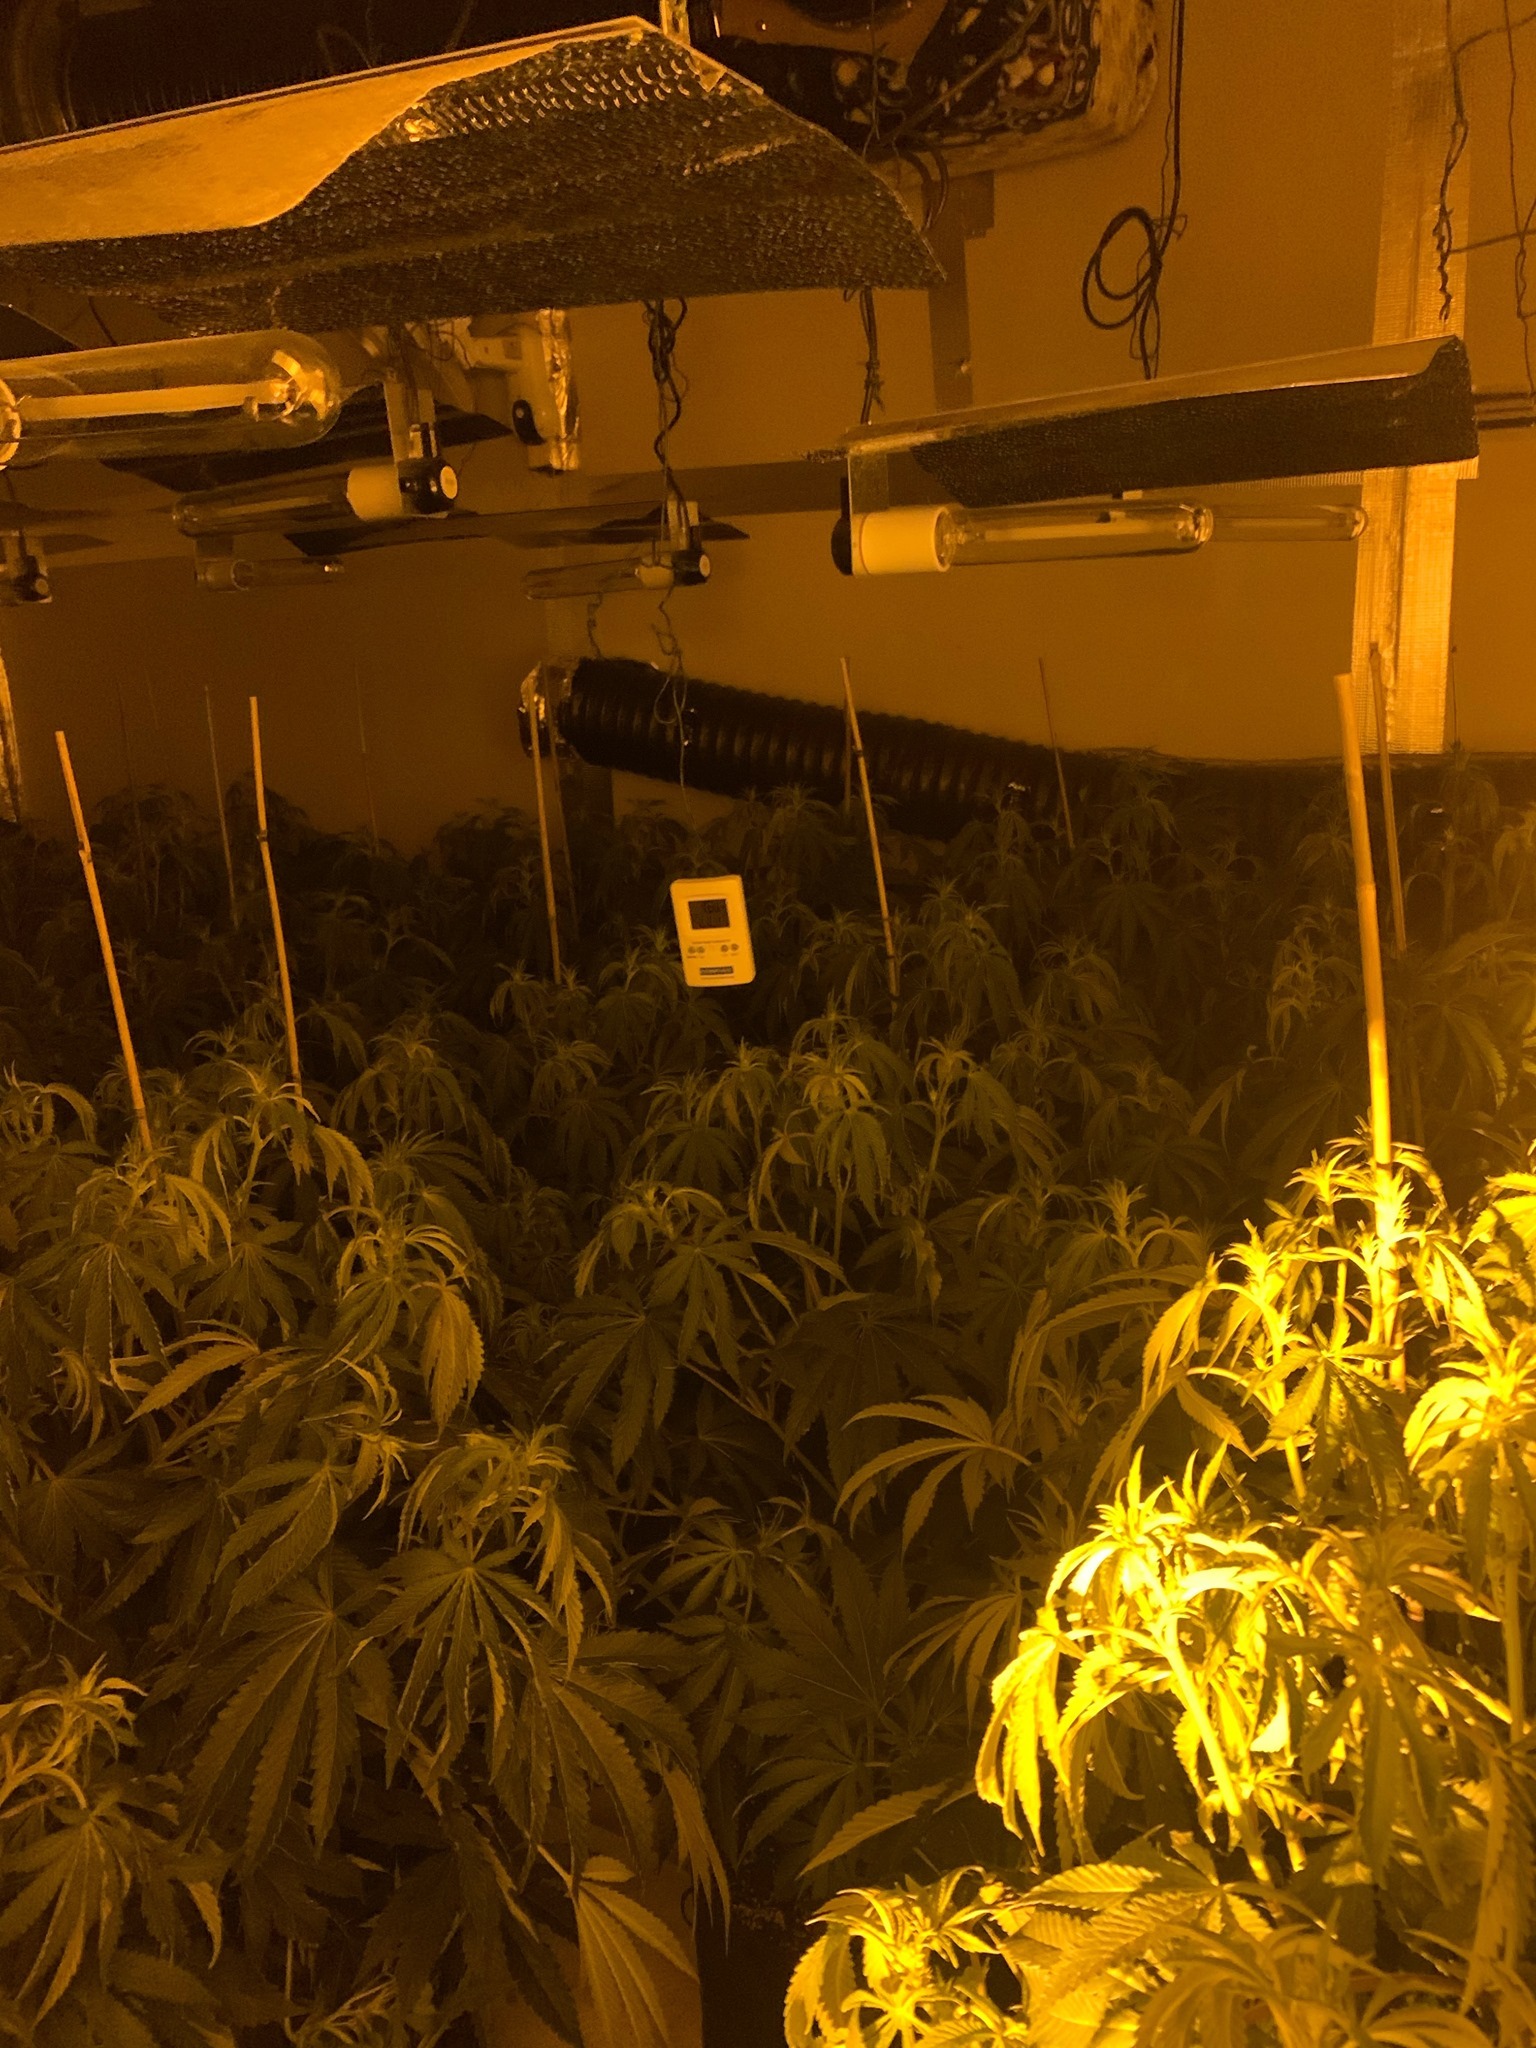 The cannabis farm that police found